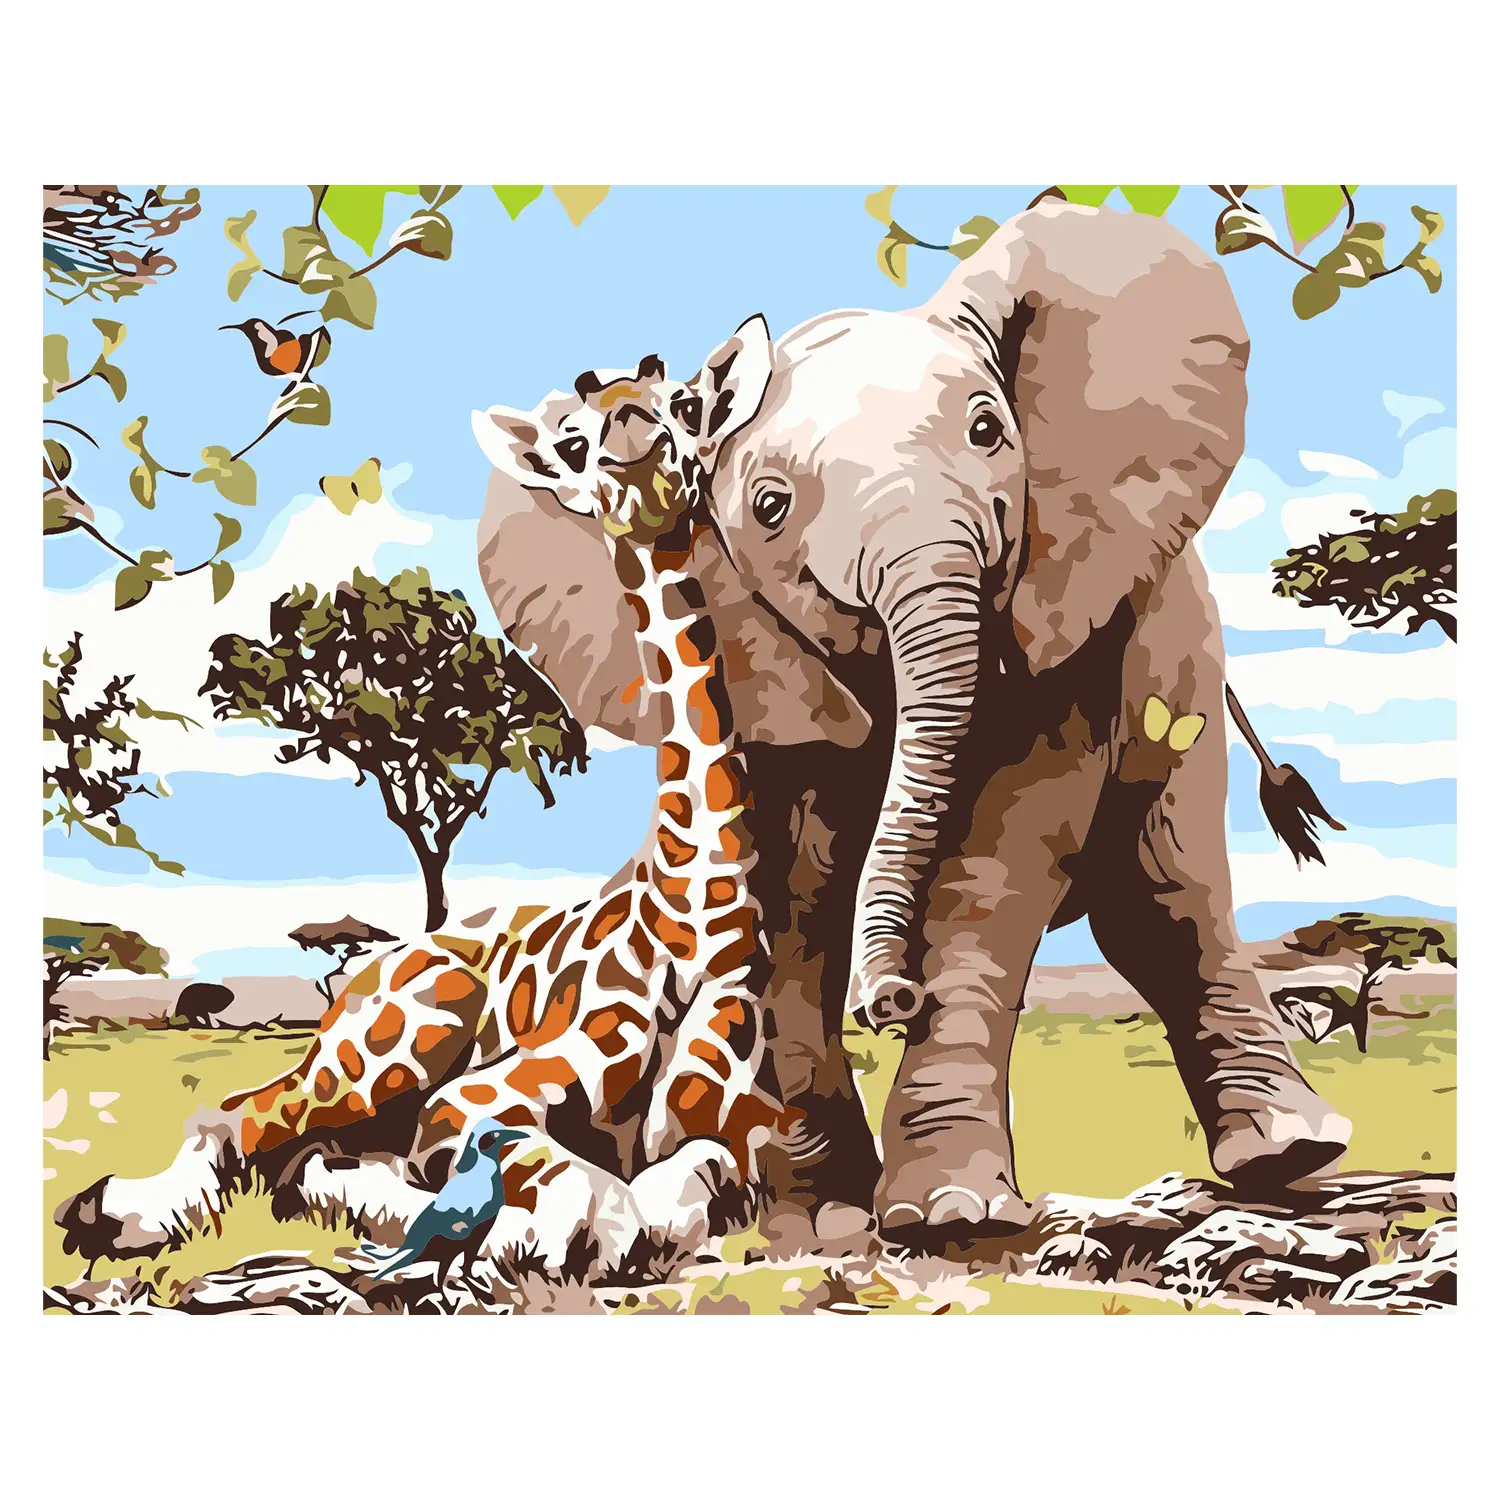 Lienzo con dibujo para pintar con números, de 40x50cm. Diseño elefante y jirafa. Incluye pinceles y pinturas necesarias.